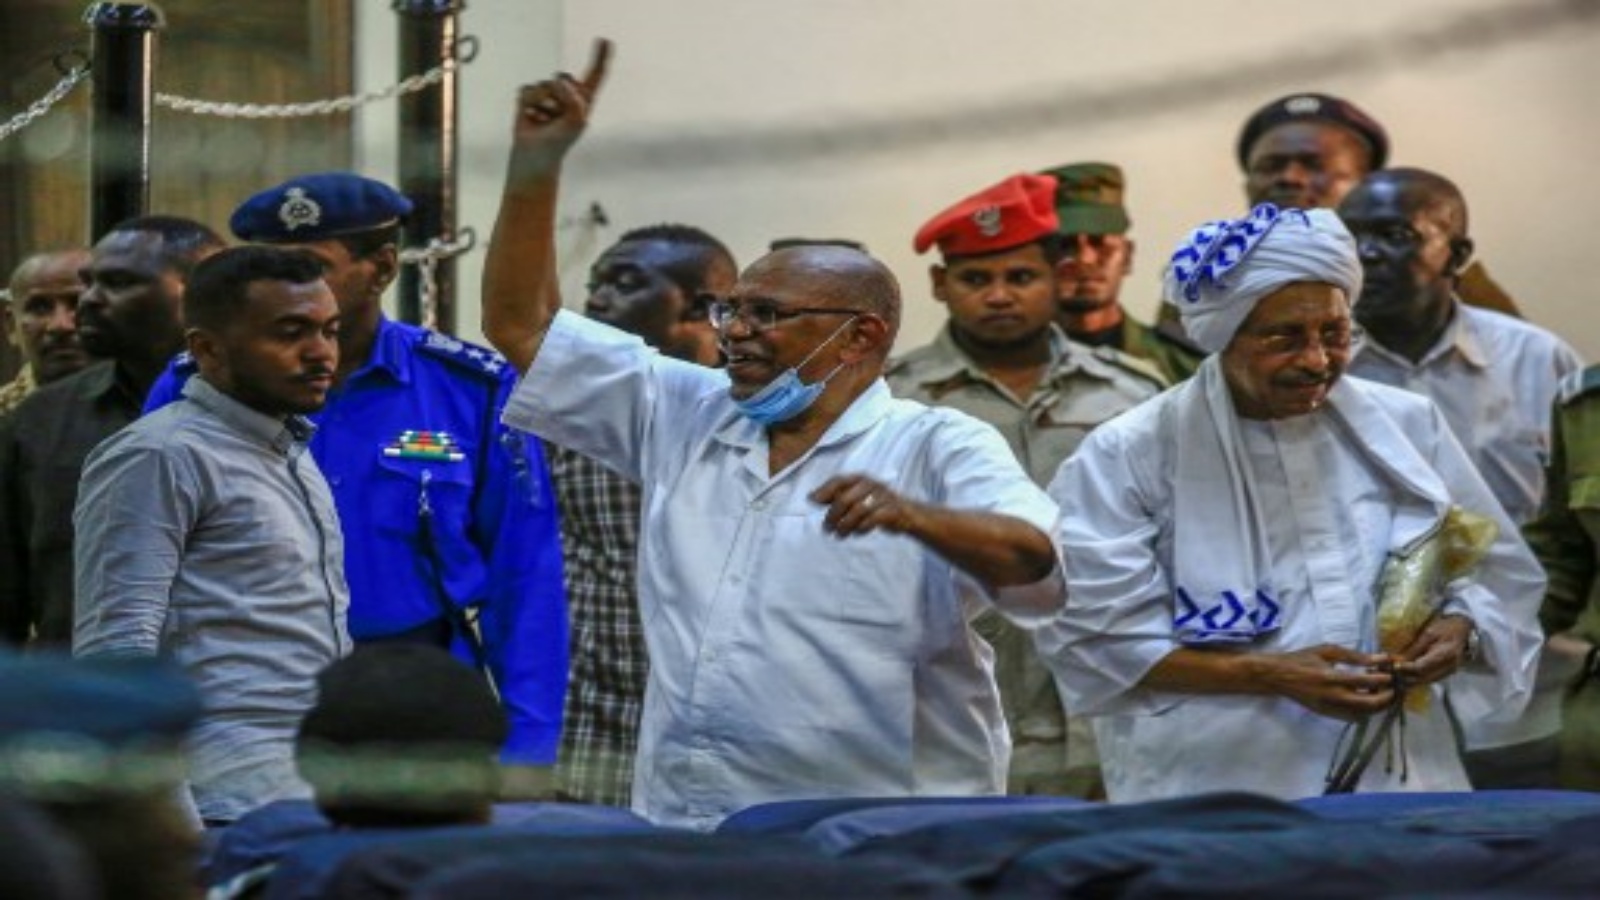 الرئيس السوداني المخلوع عمر البشير (وسط) يلوح له أثناء وصوله لمحاكمته في العاصمة الخرطوم ، في 6 أكتوبر 2020 ، إلى جانب 27 متهمًا مشاركًا في الانقلاب العسكري عام 1989 الذي أوصله إلى السلطة